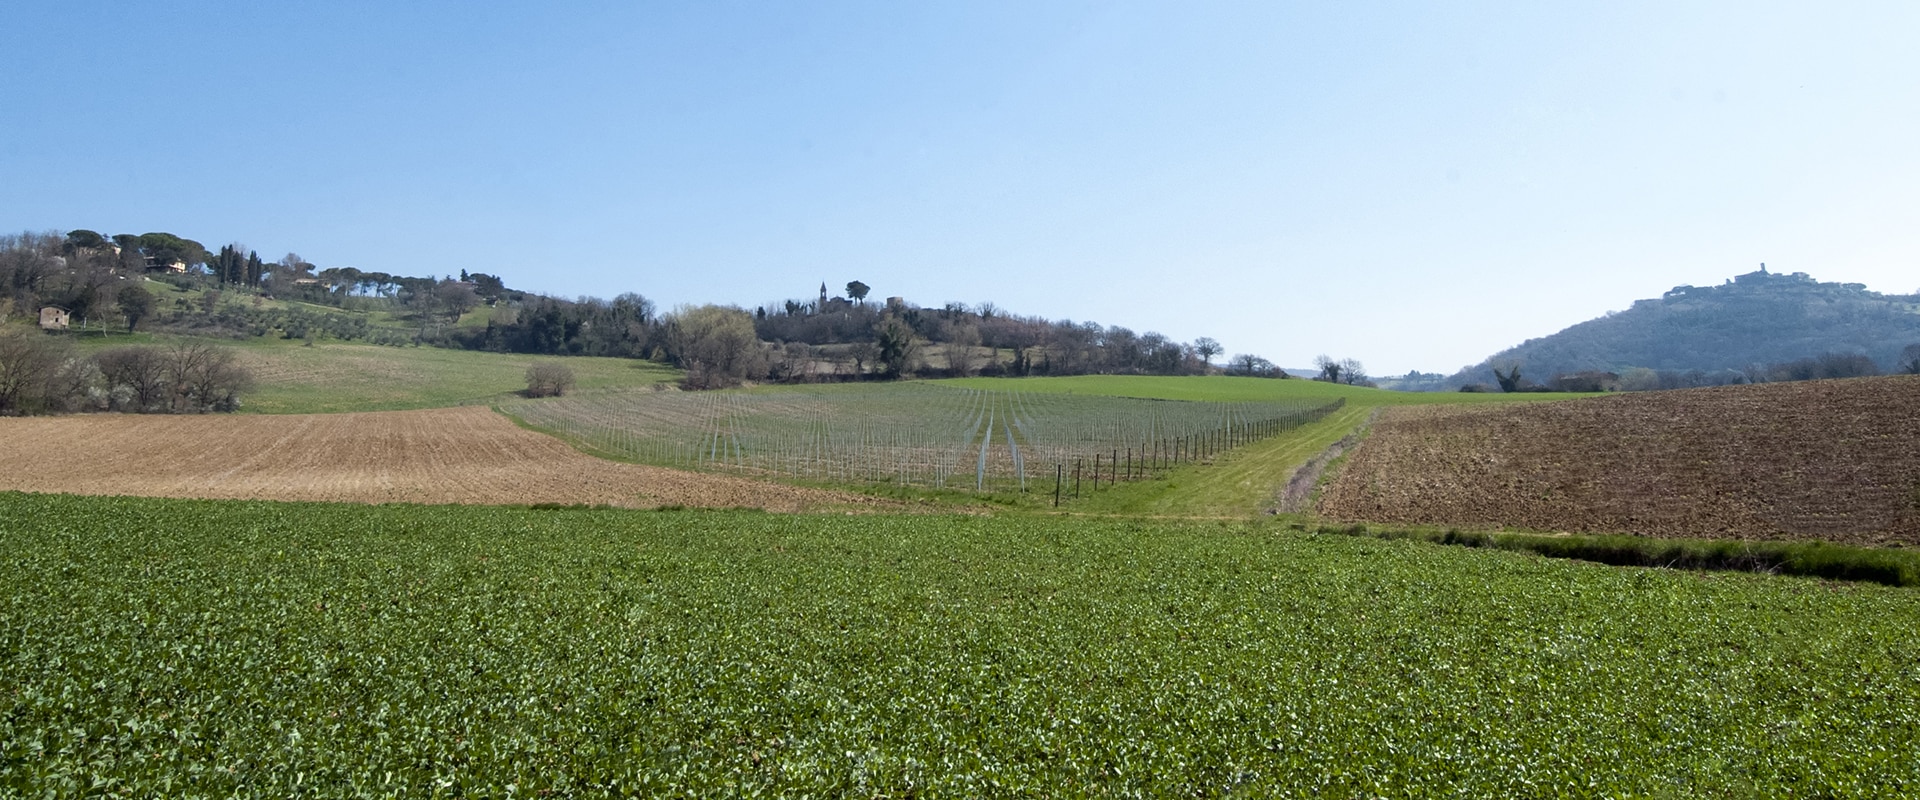 Una panoramica della tenuta agricola della famiglia Bennicelli